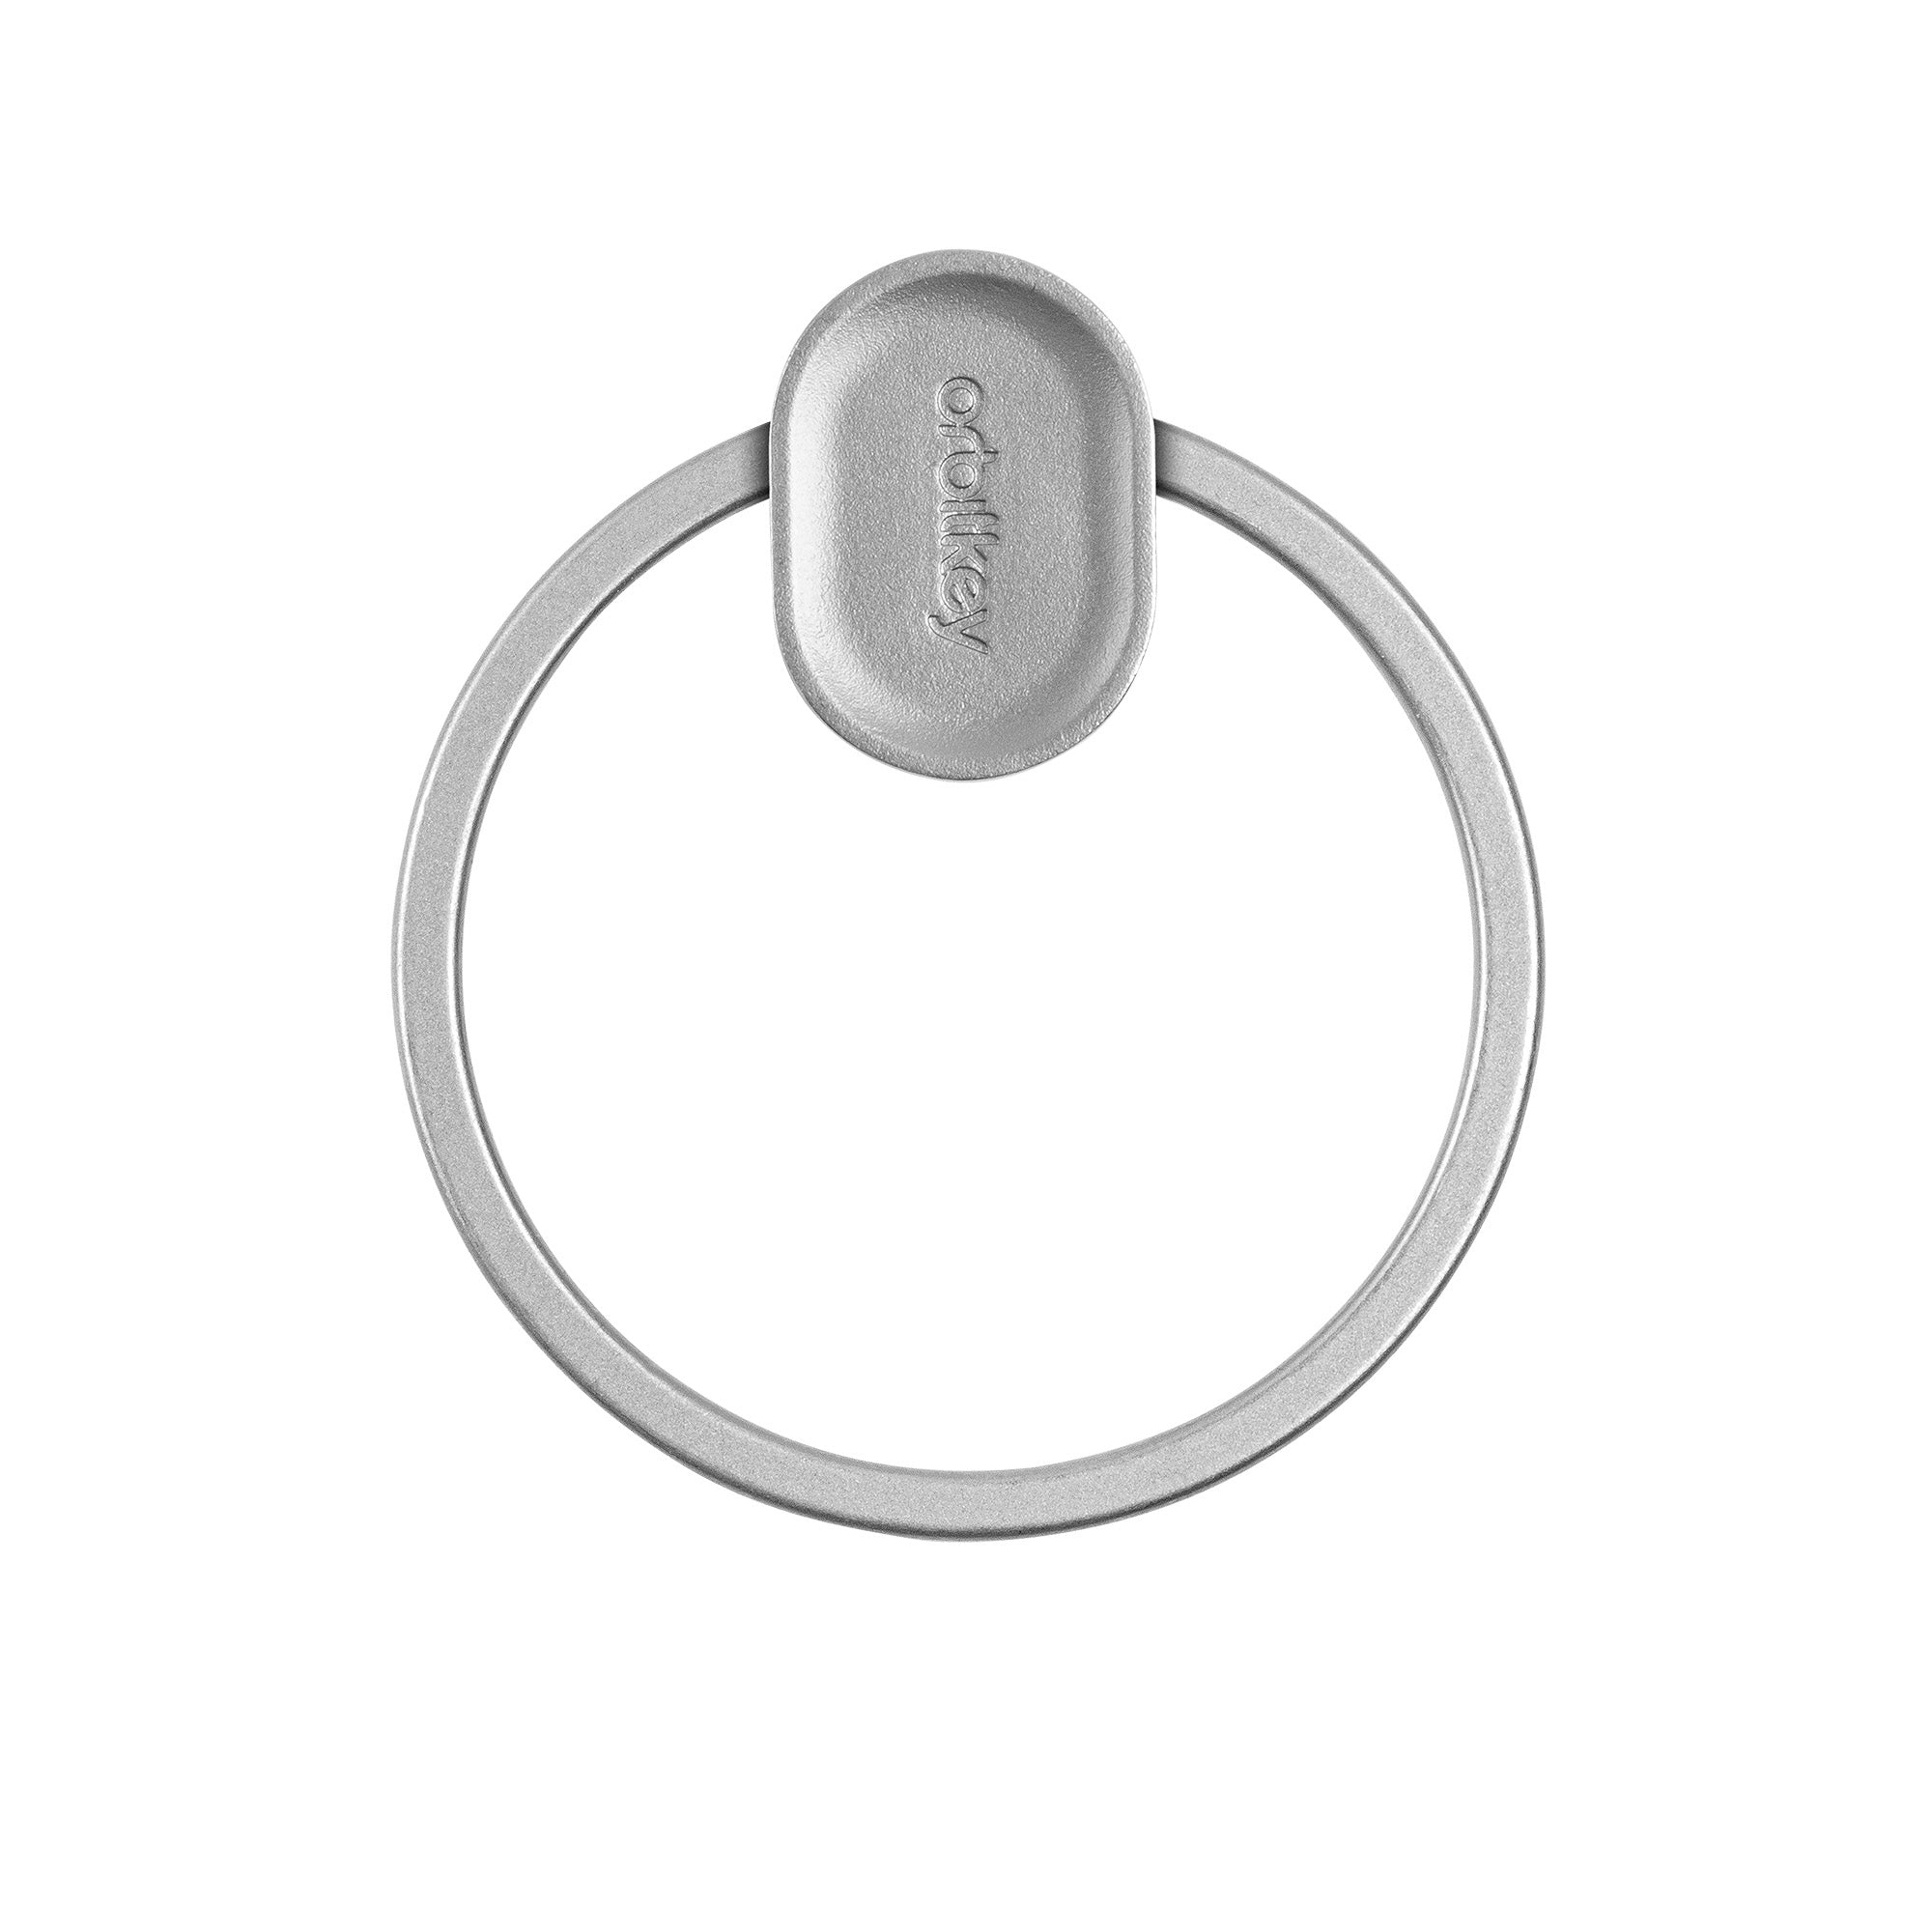 Orbitkey Ring V2 Silver│Sleutelhanger zilver│PRN2-SLV-102│sleutelring gesloten zonder sleutels